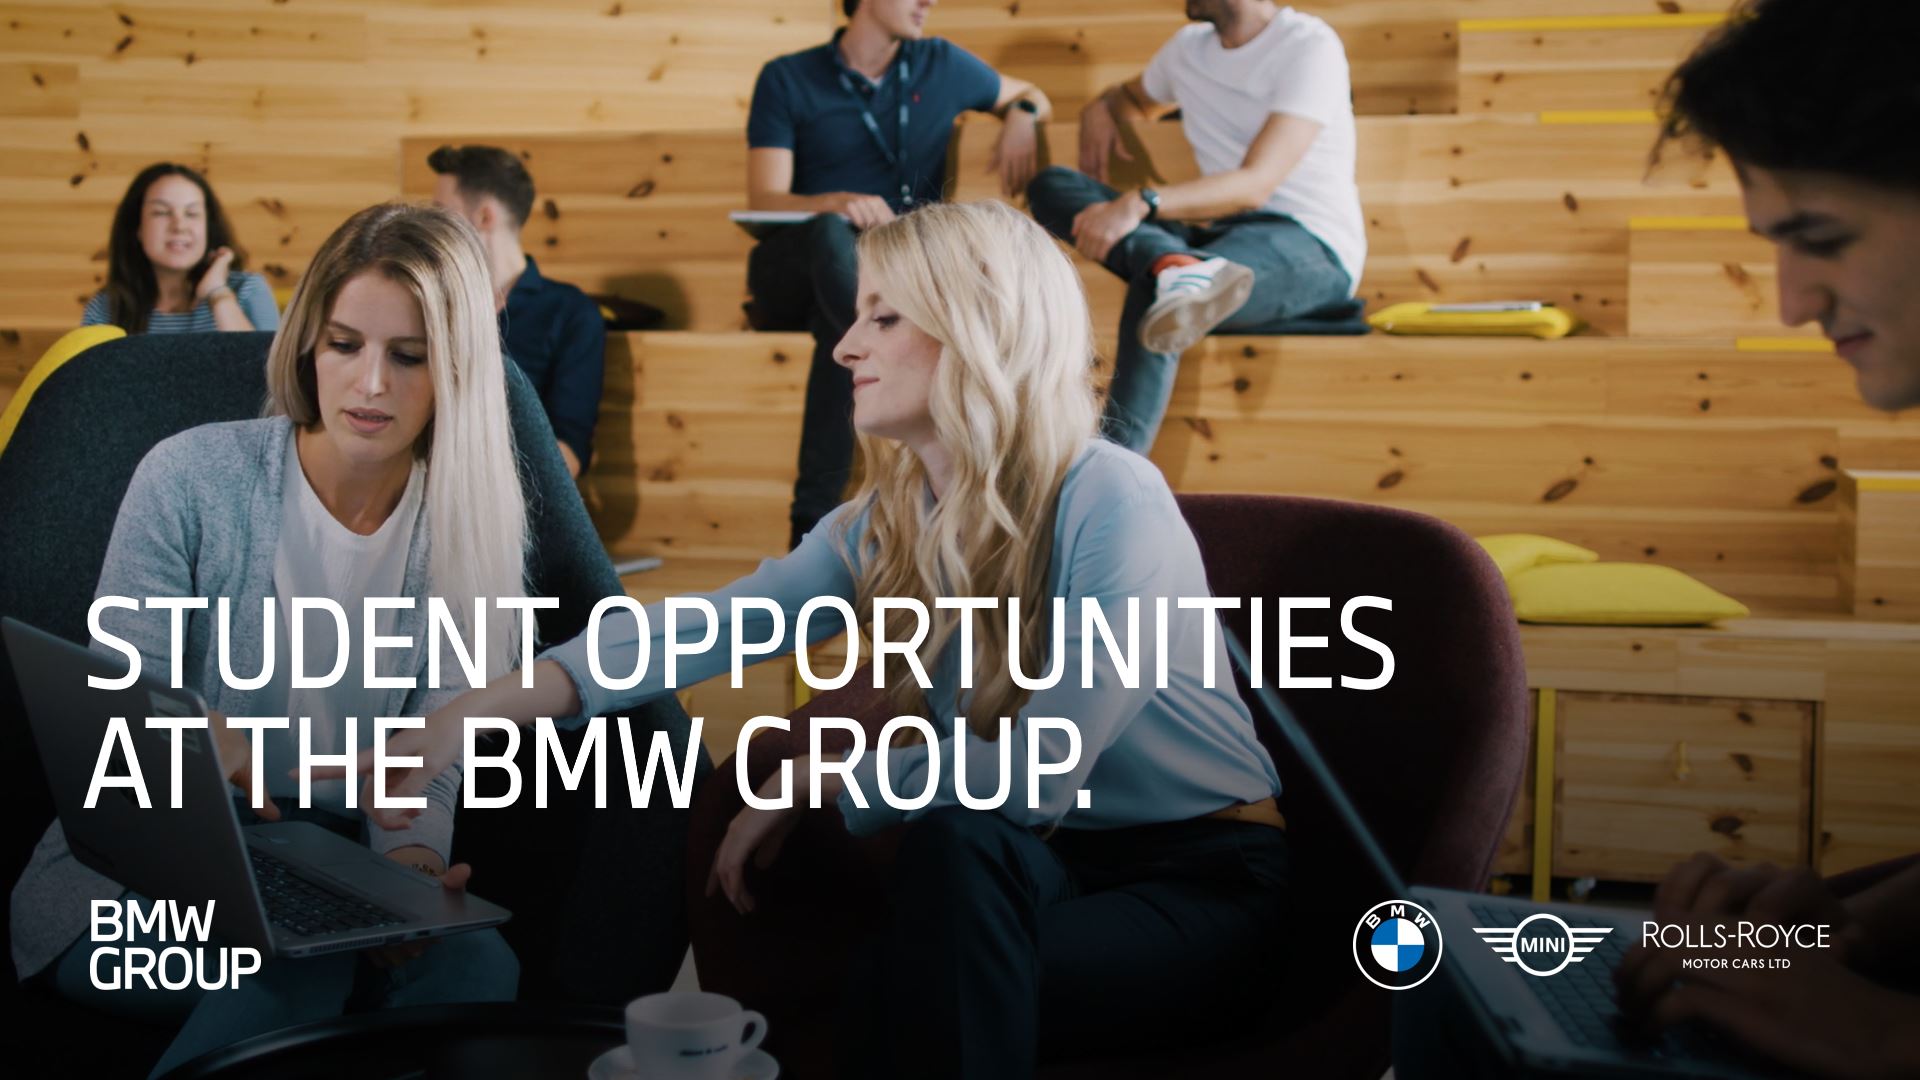 Das Video zeigt Einblicke in die verschiedenen Einsatzfelder als Student:in bei der BMW Group.